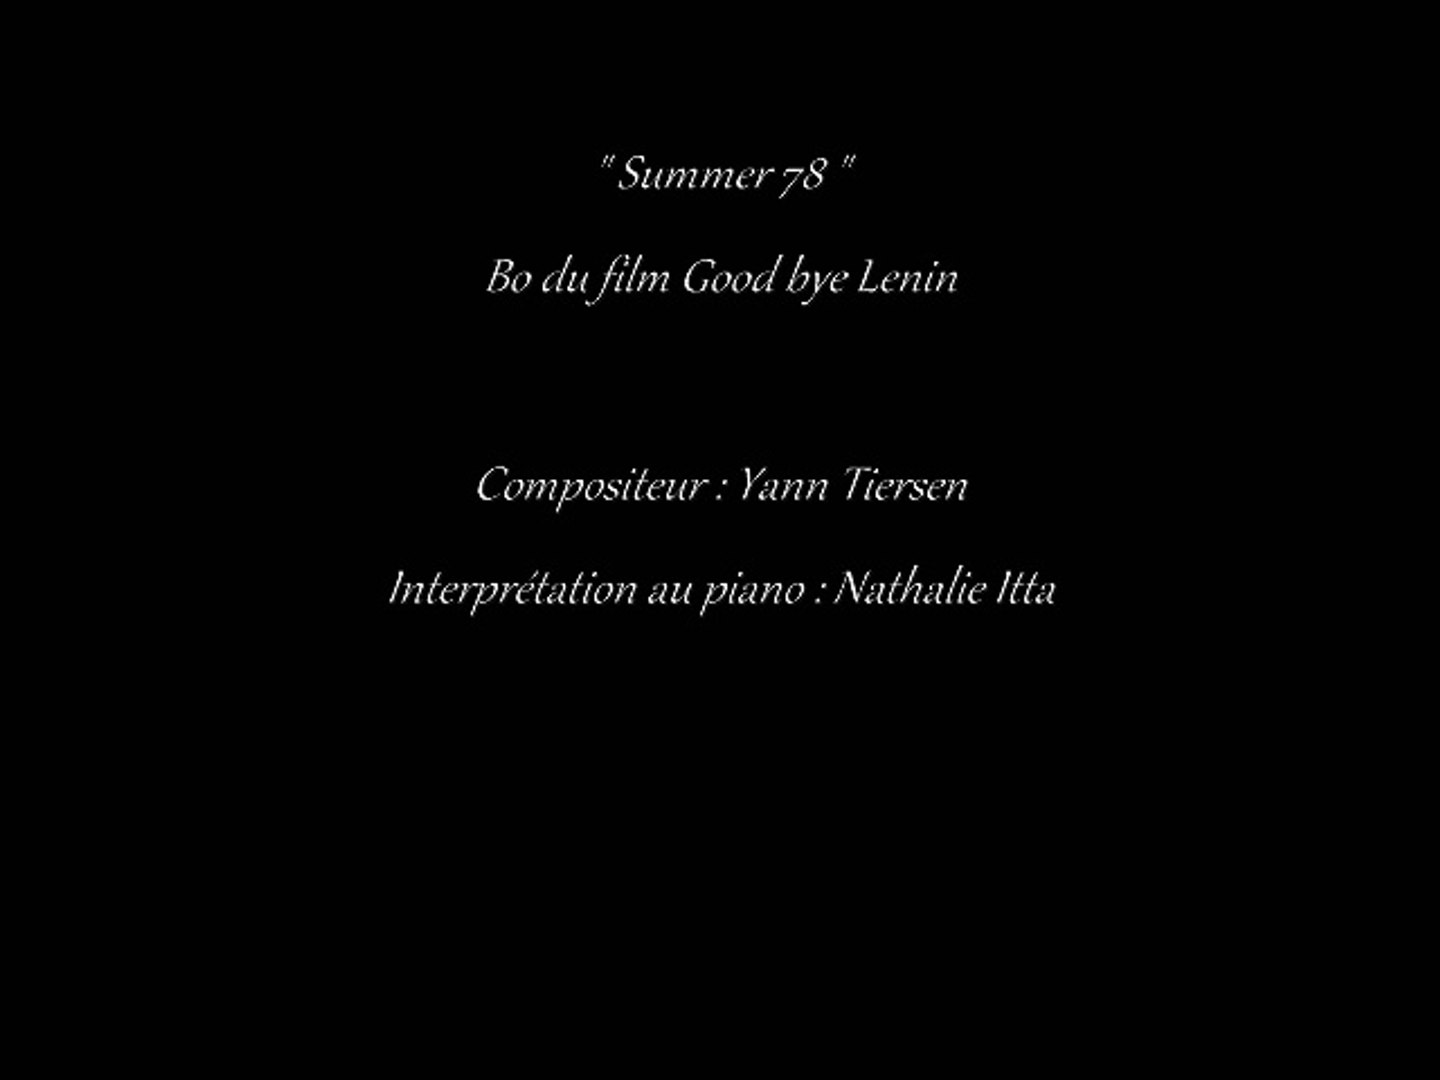 Summer 78 " musique du film Good bye Lenin composée par Yann Tiersen et  interprétée au piano par Nathalie ITTA - Vidéo Dailymotion